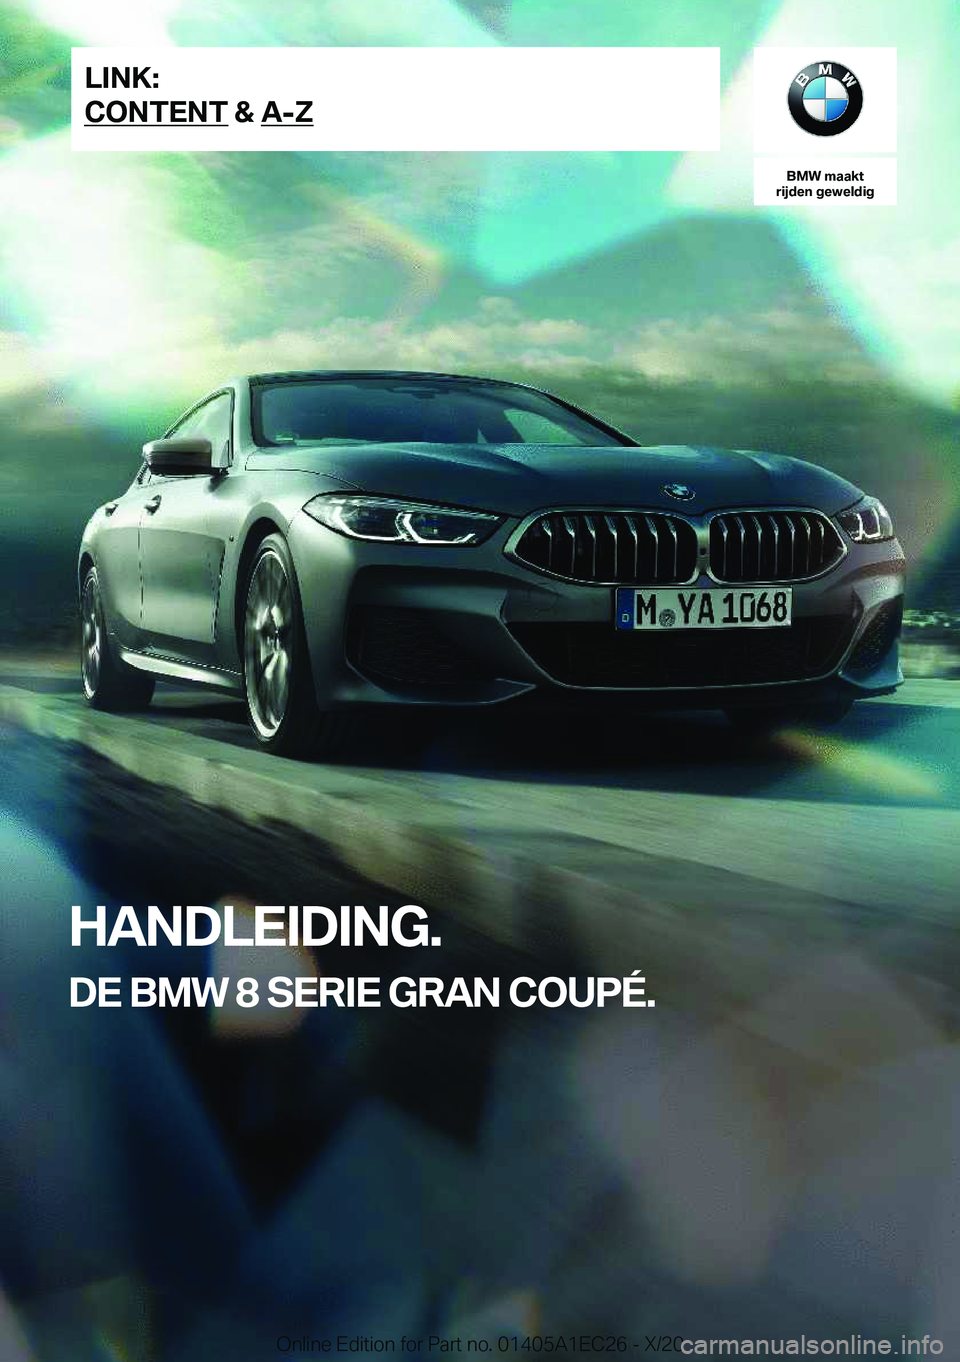 BMW 8 SERIES GRAN COUPE 2021  Instructieboekjes (in Dutch) �B�M�W��m�a�a�k�t
�r�i�j�d�e�n��g�e�w�e�l�d�i�g
�H�A�N�D�L�E�I�D�I�N�G�.
�D�E��B�M�W��8��S�E�R�I�E��G�R�A�N��C�O�U�P�